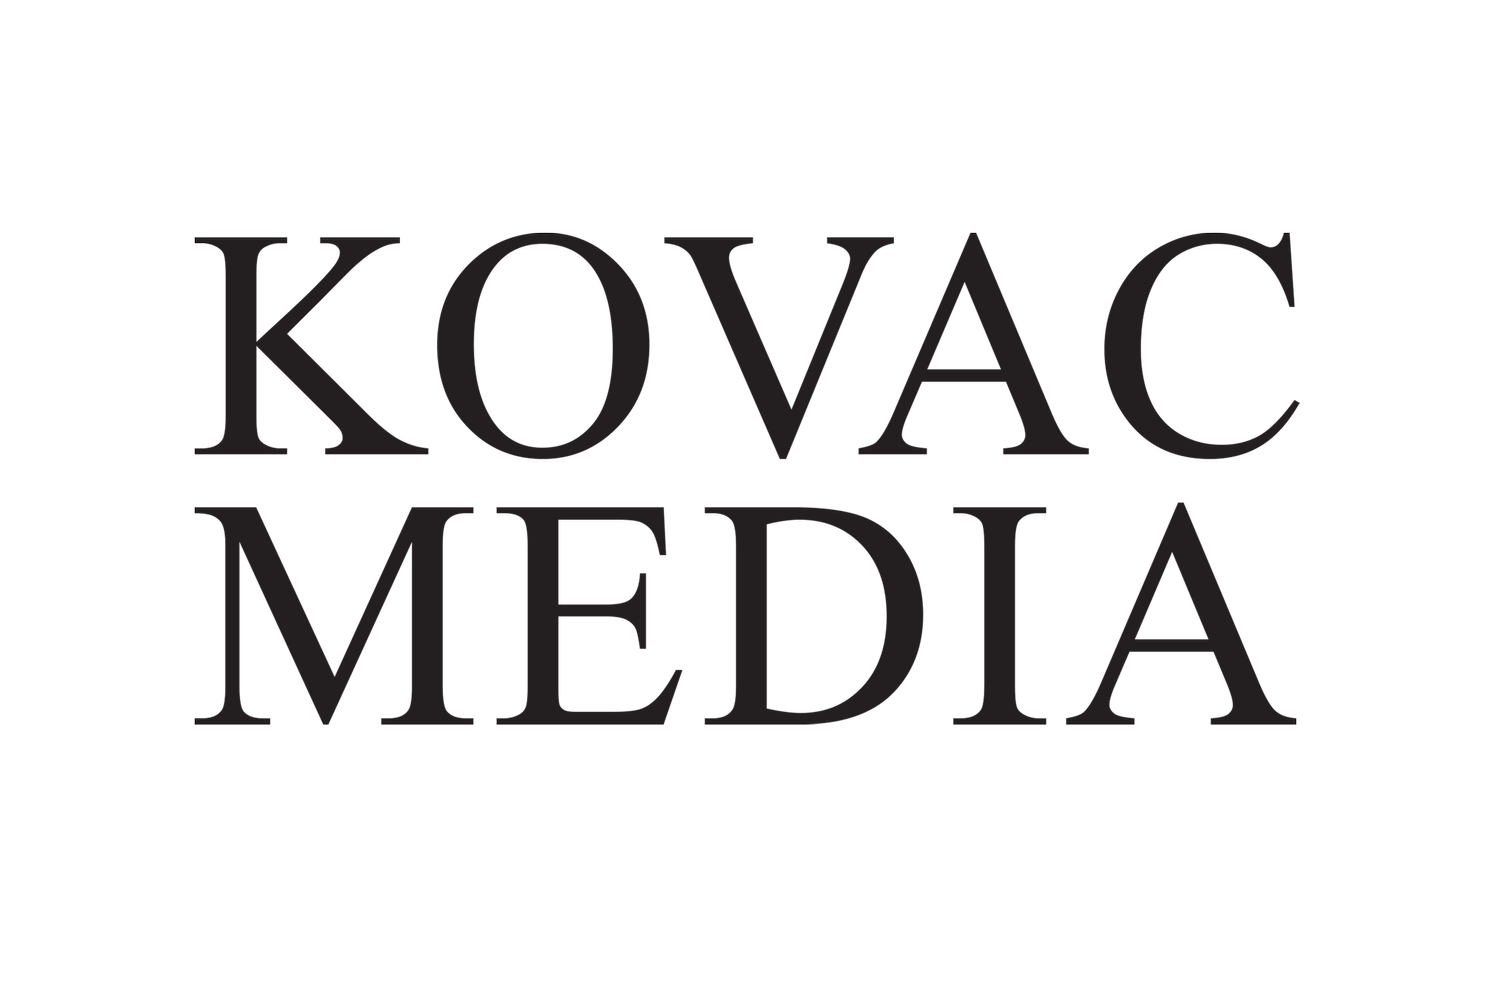 Kovac Media